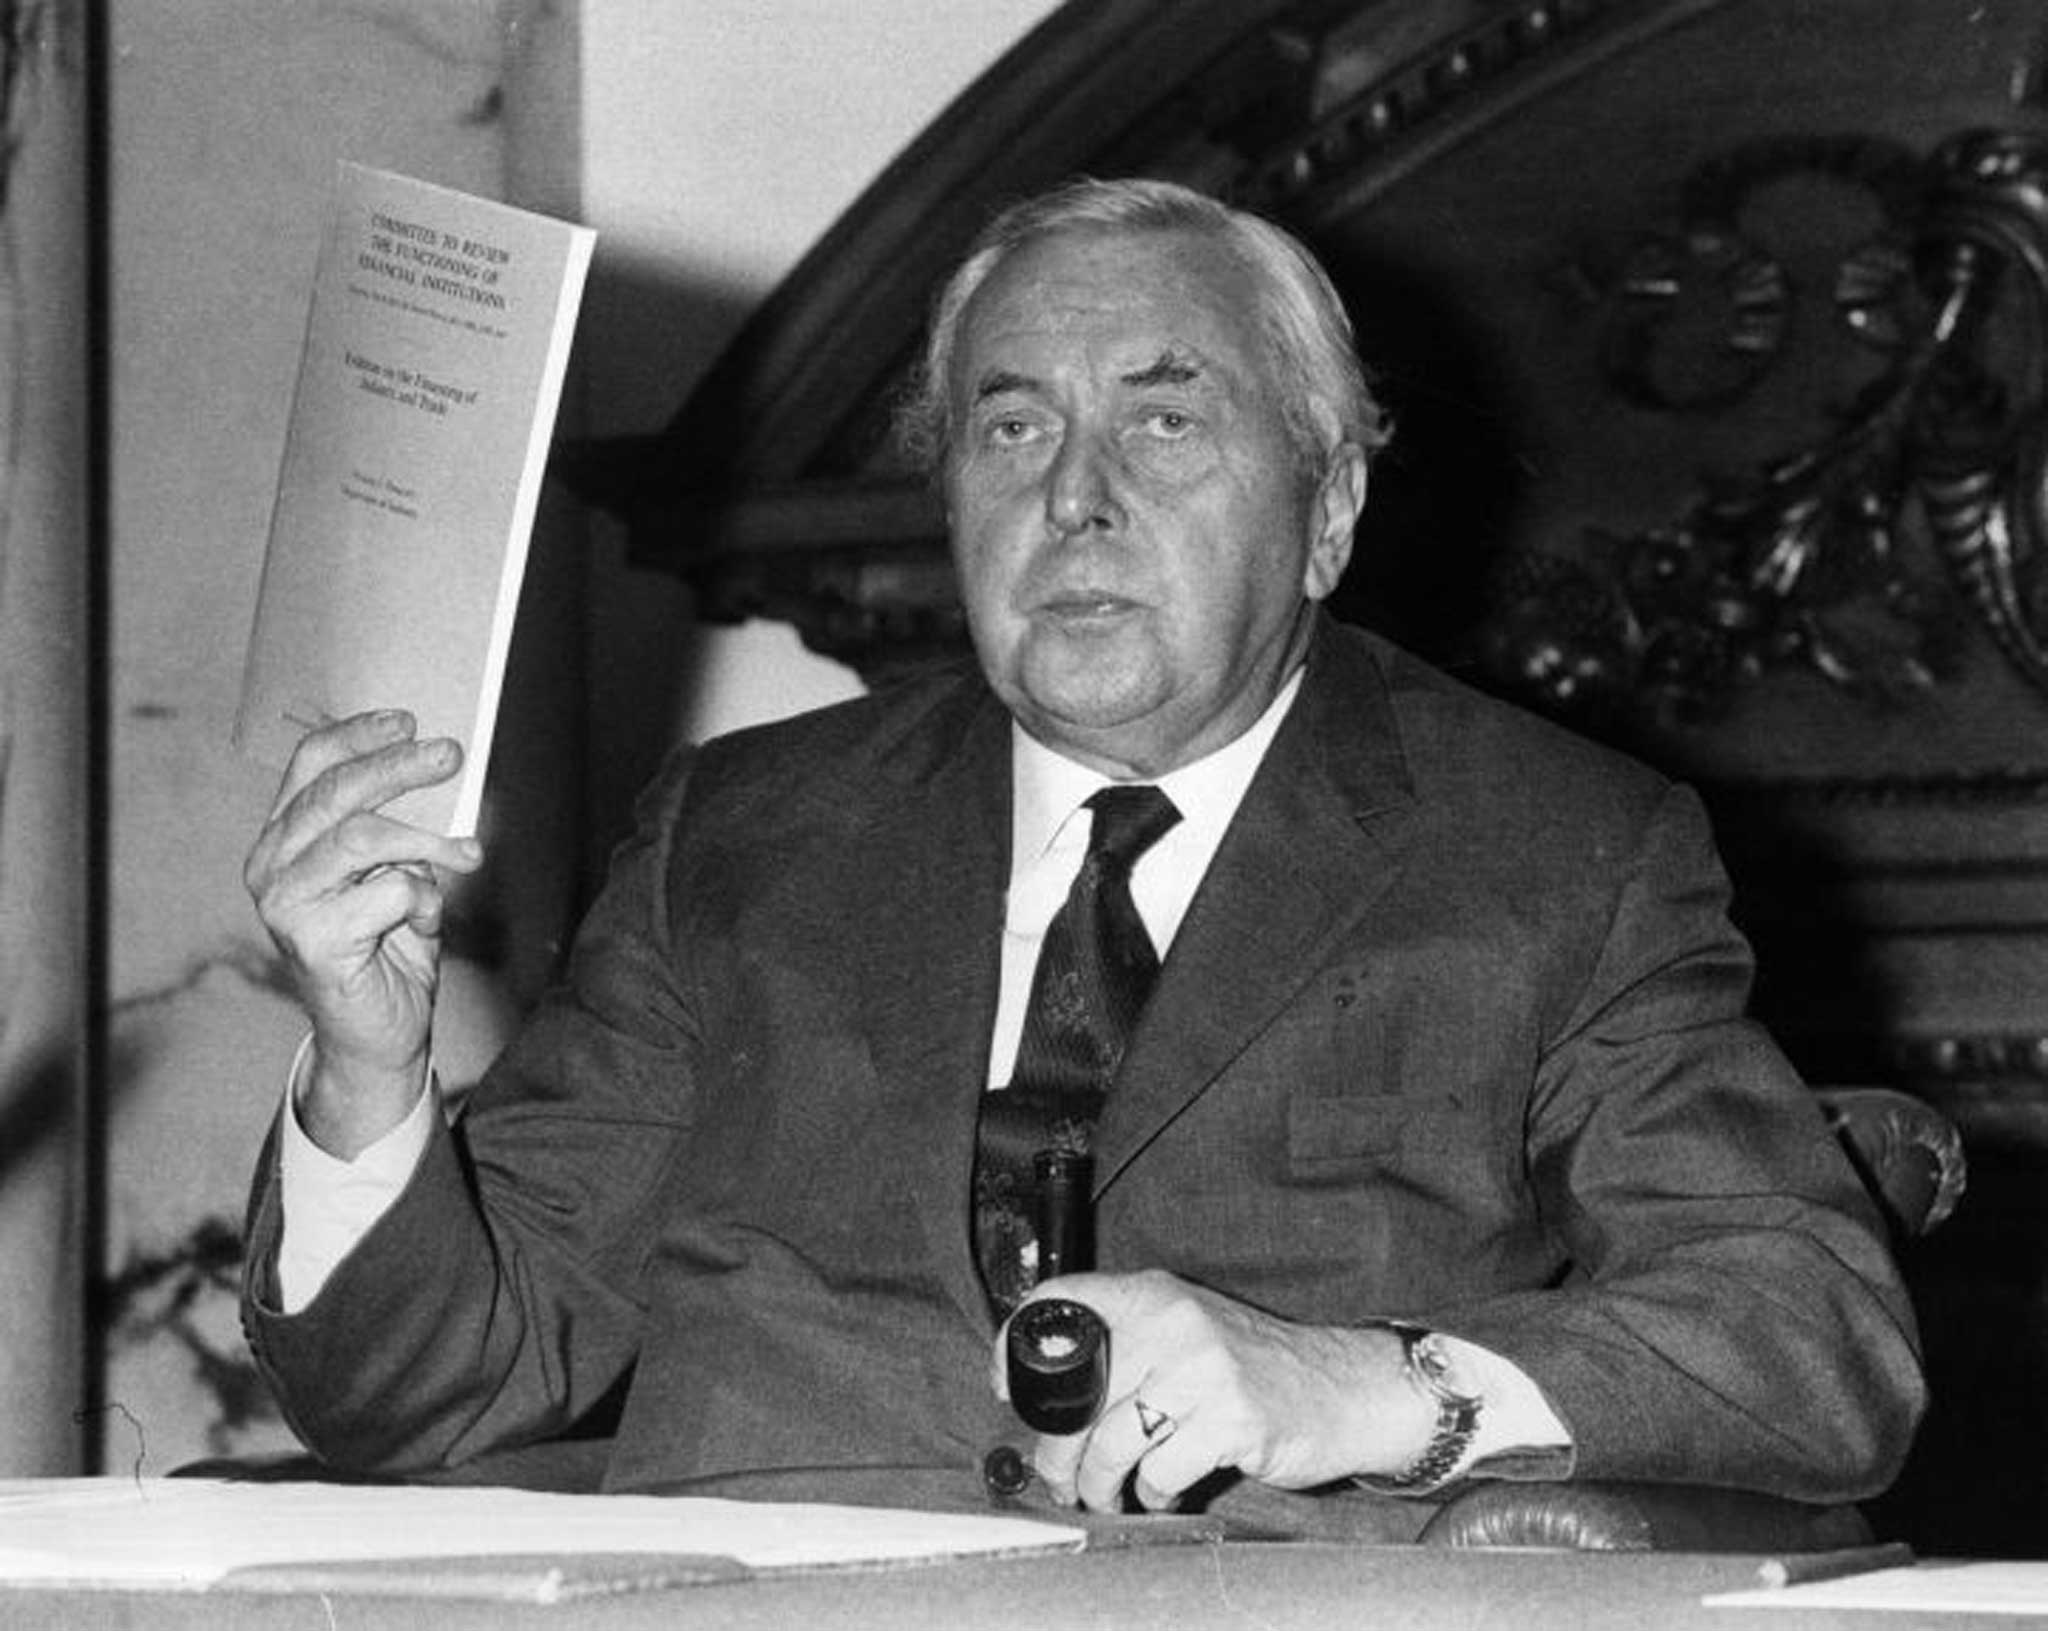 King of quips: Former prime minister Harold Wilson